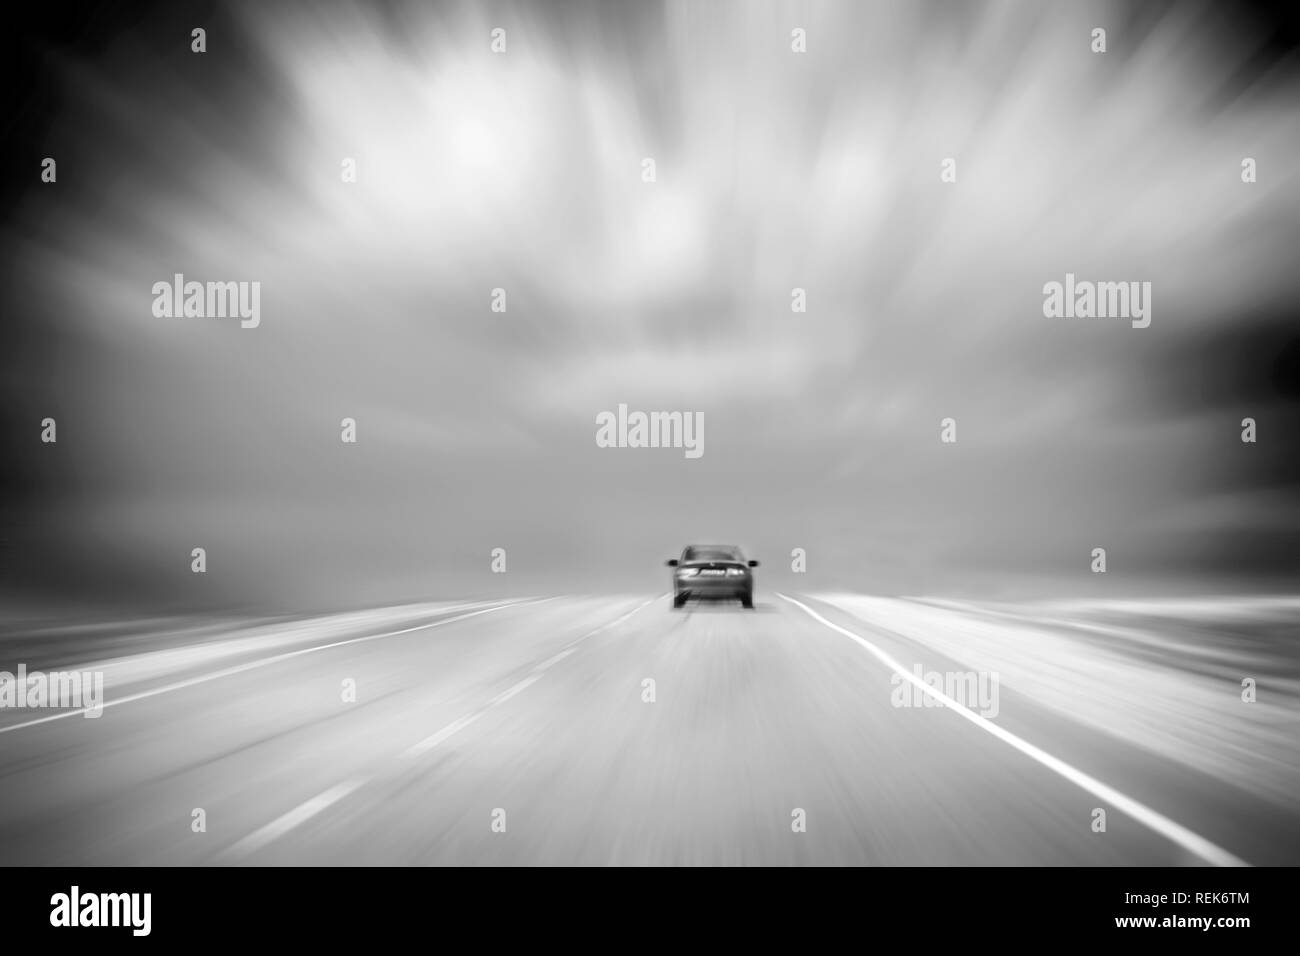 Vista posteriore di una vettura di accelerazione su strada asfaltata in campagna. Nuvoloso, cielo tempestoso. Immagine in bianco e nero con Copy-Space. Sfocatura del movimento Foto Stock